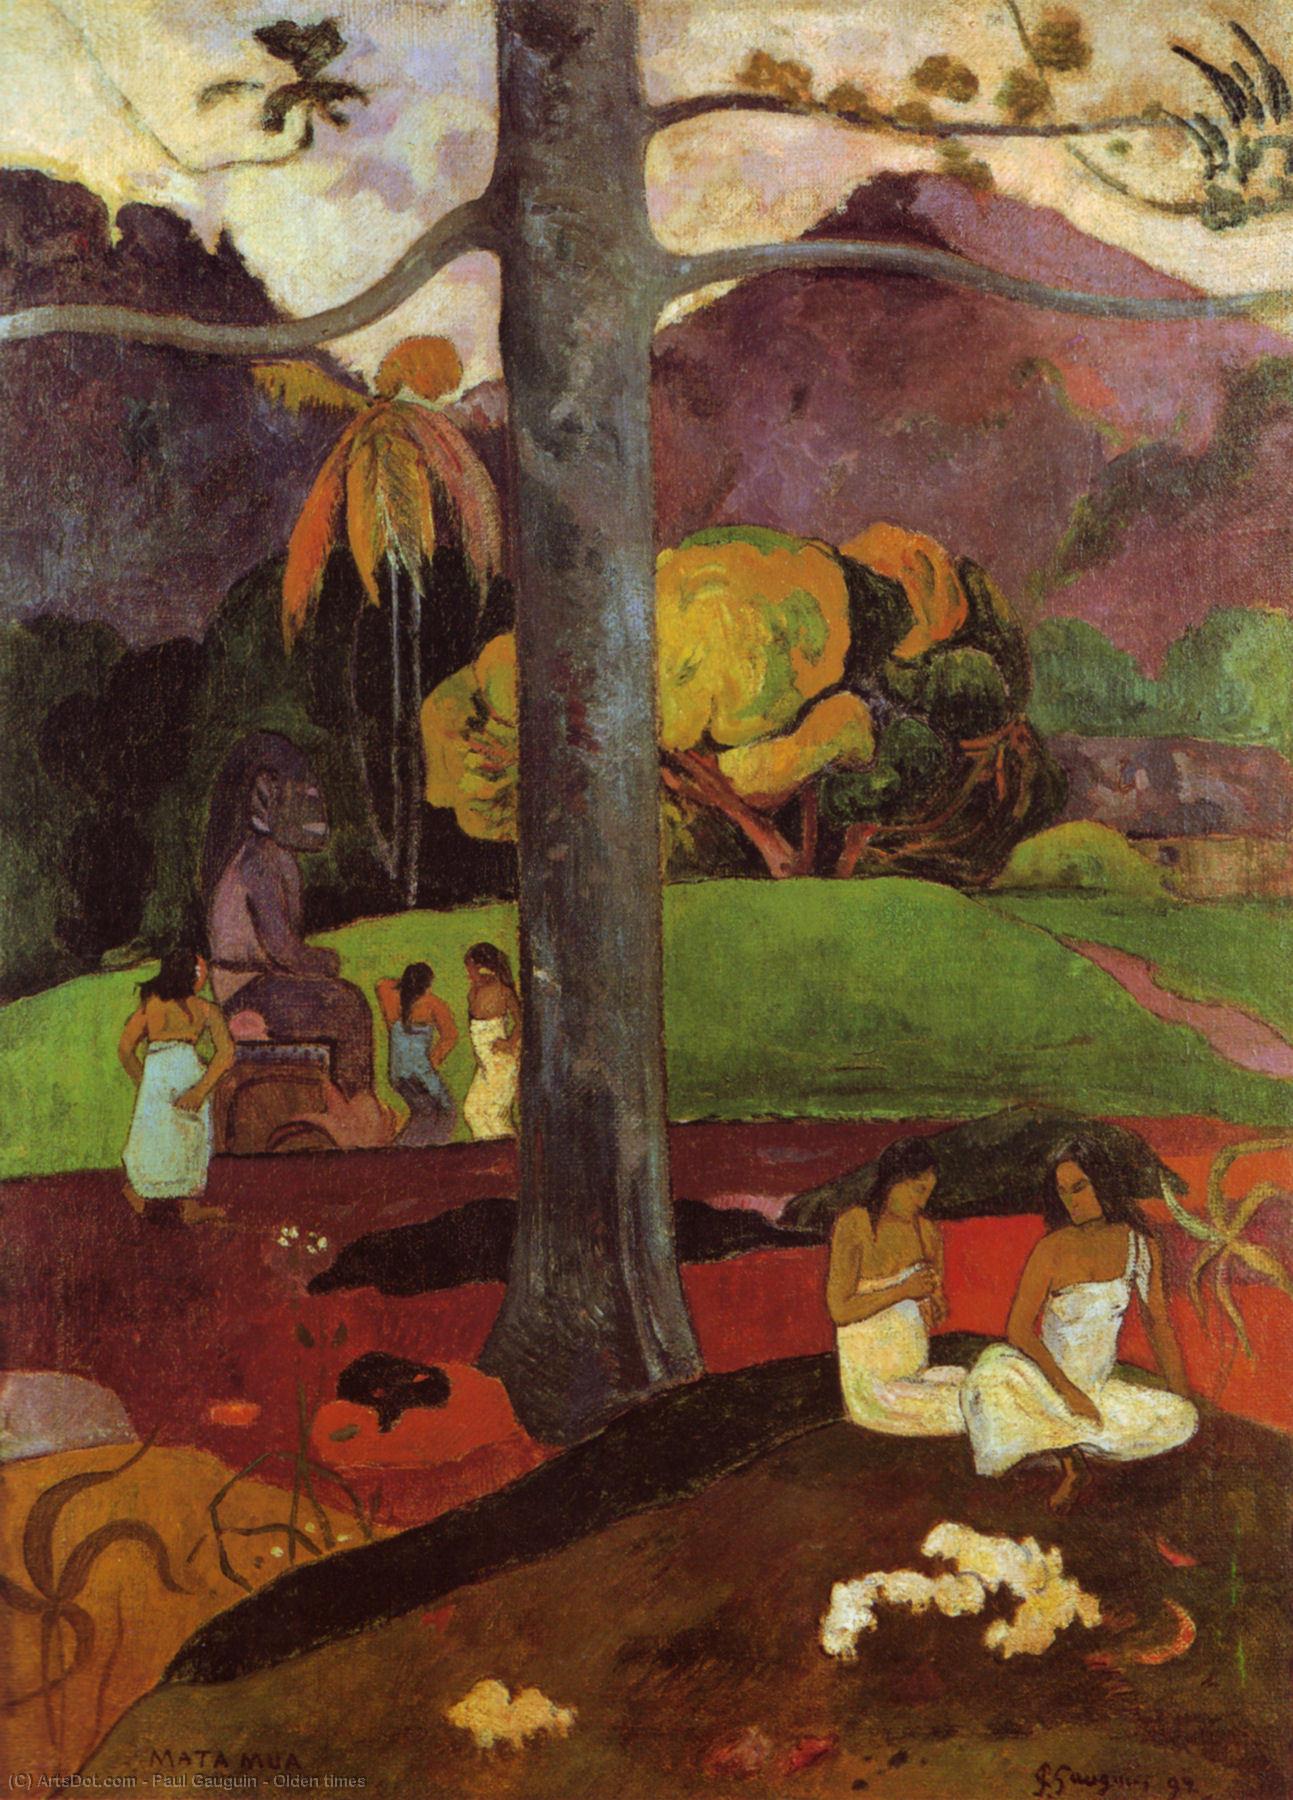 WikiOO.org - Encyclopedia of Fine Arts - Festés, Grafika Paul Gauguin - Olden times